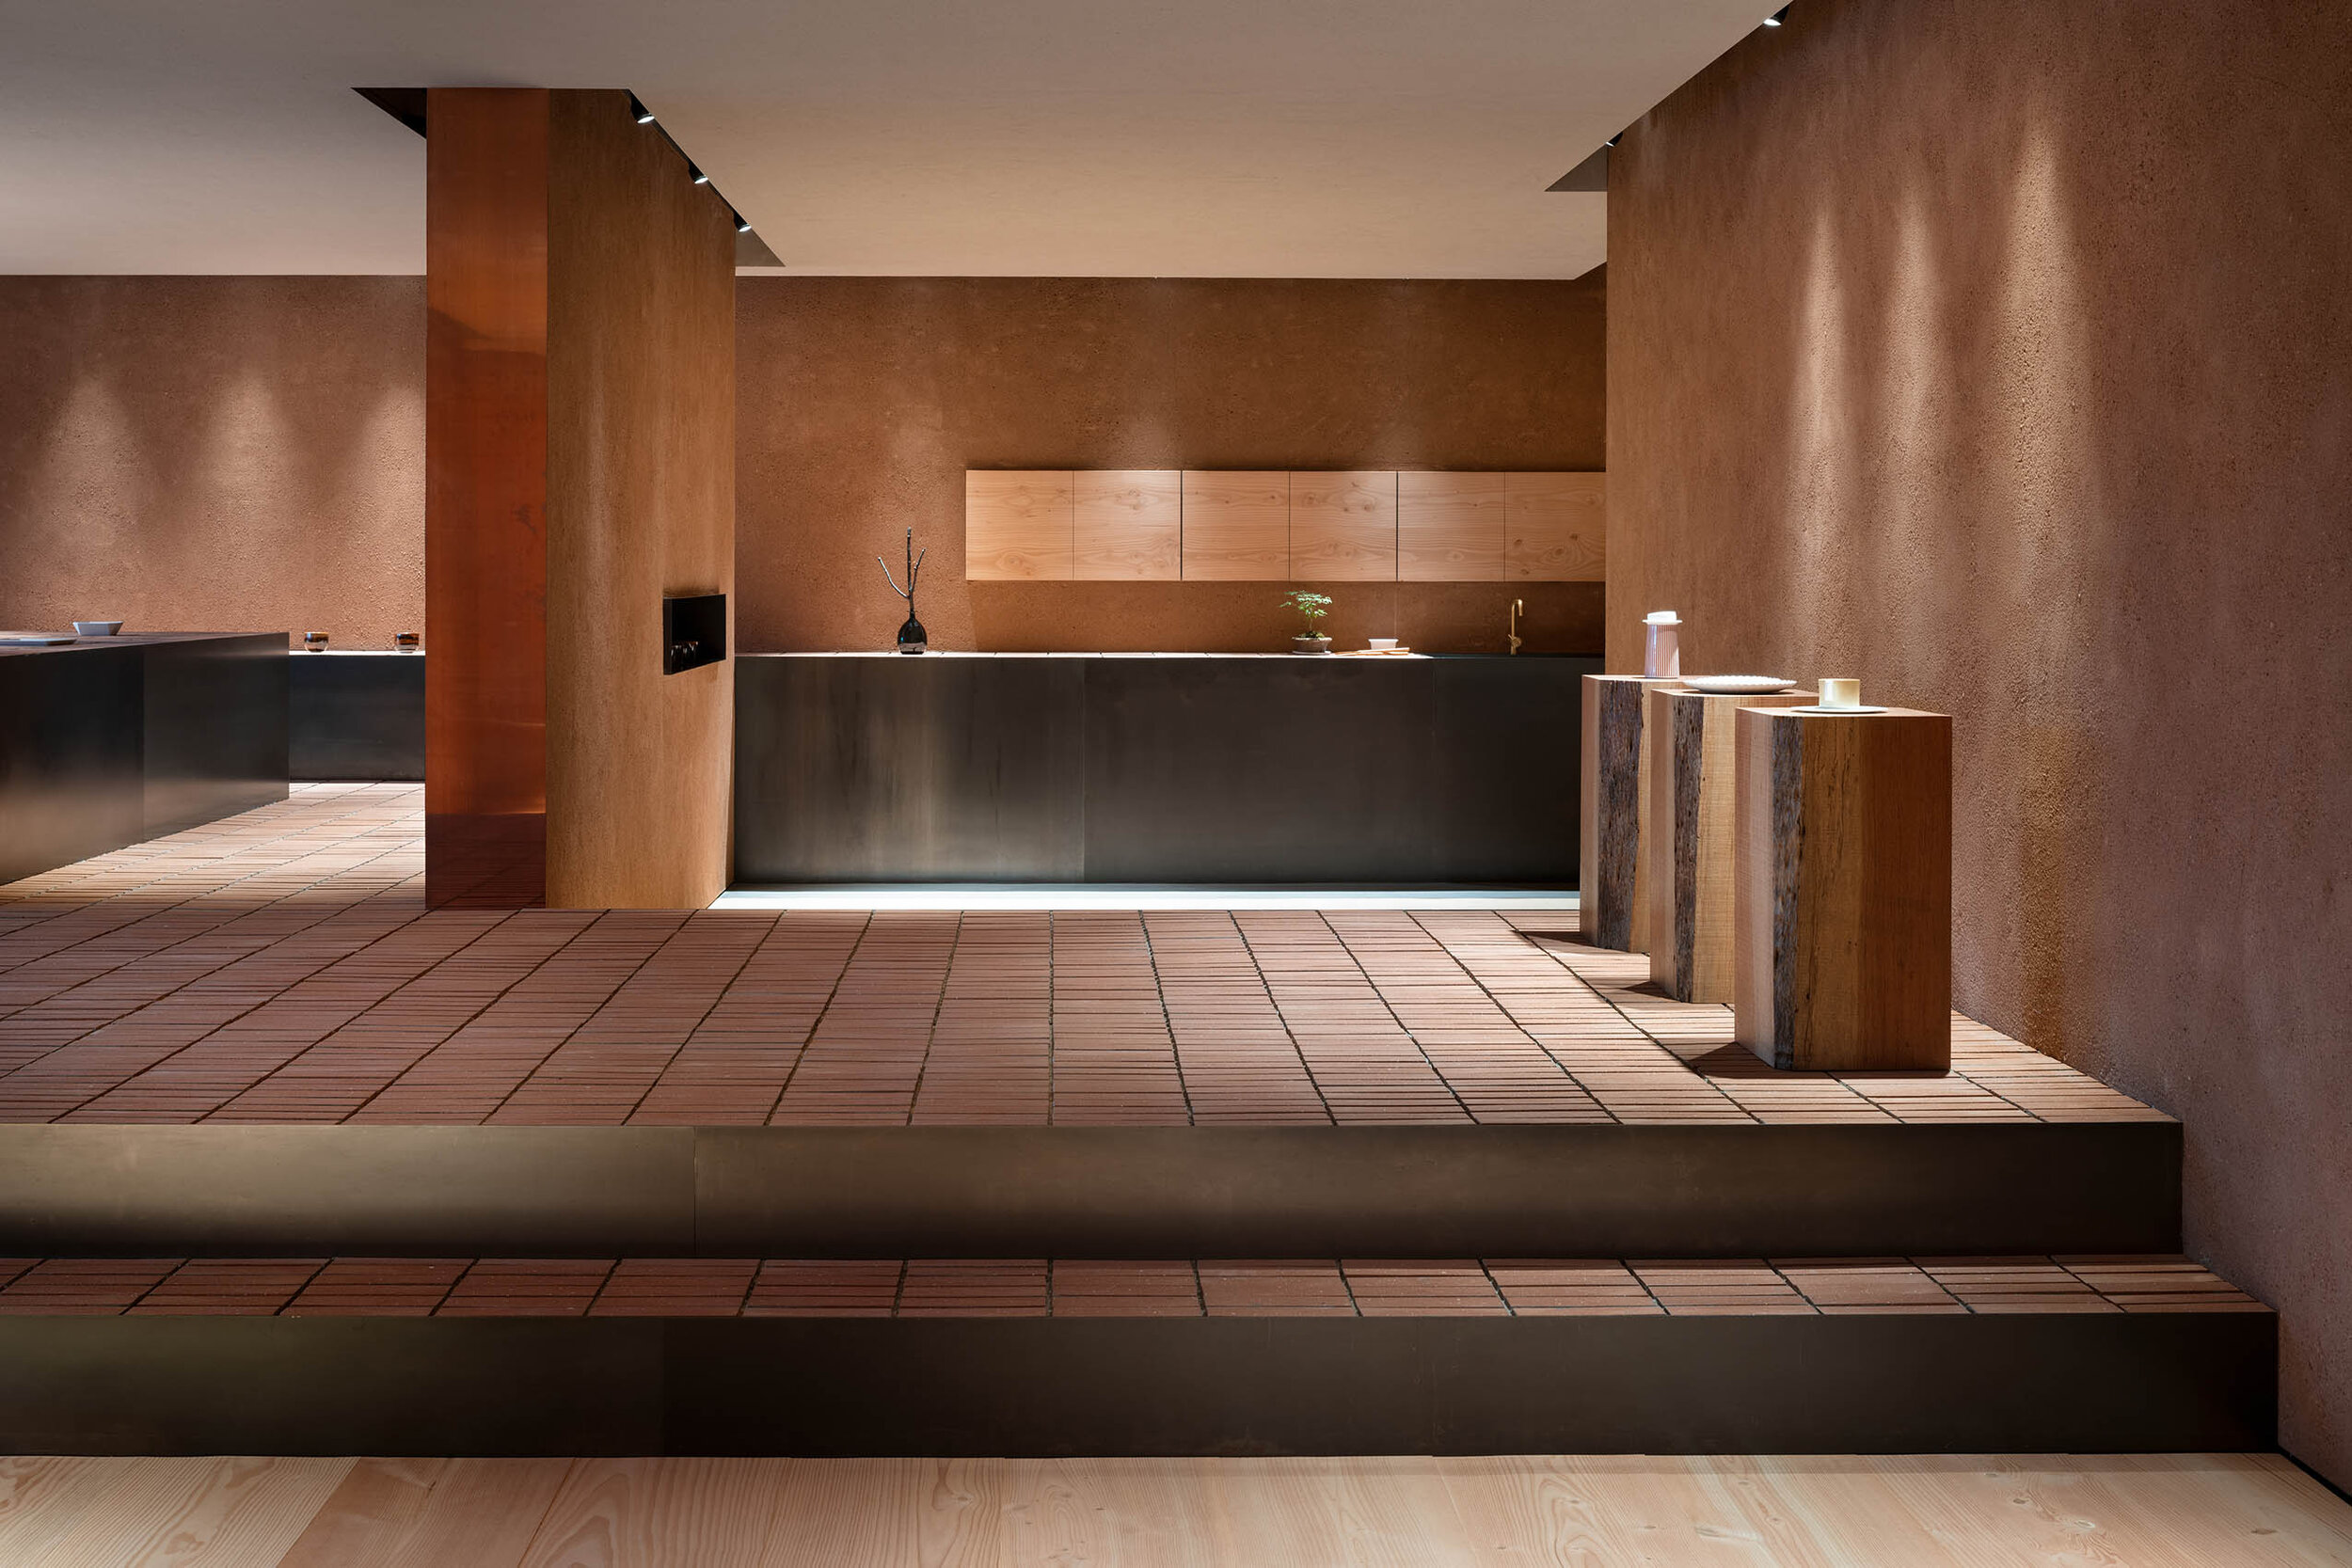  Teruhiro Yanagihara Studio has designed a calm interior for 1616/arita japan showroom in Arita, Japan. 